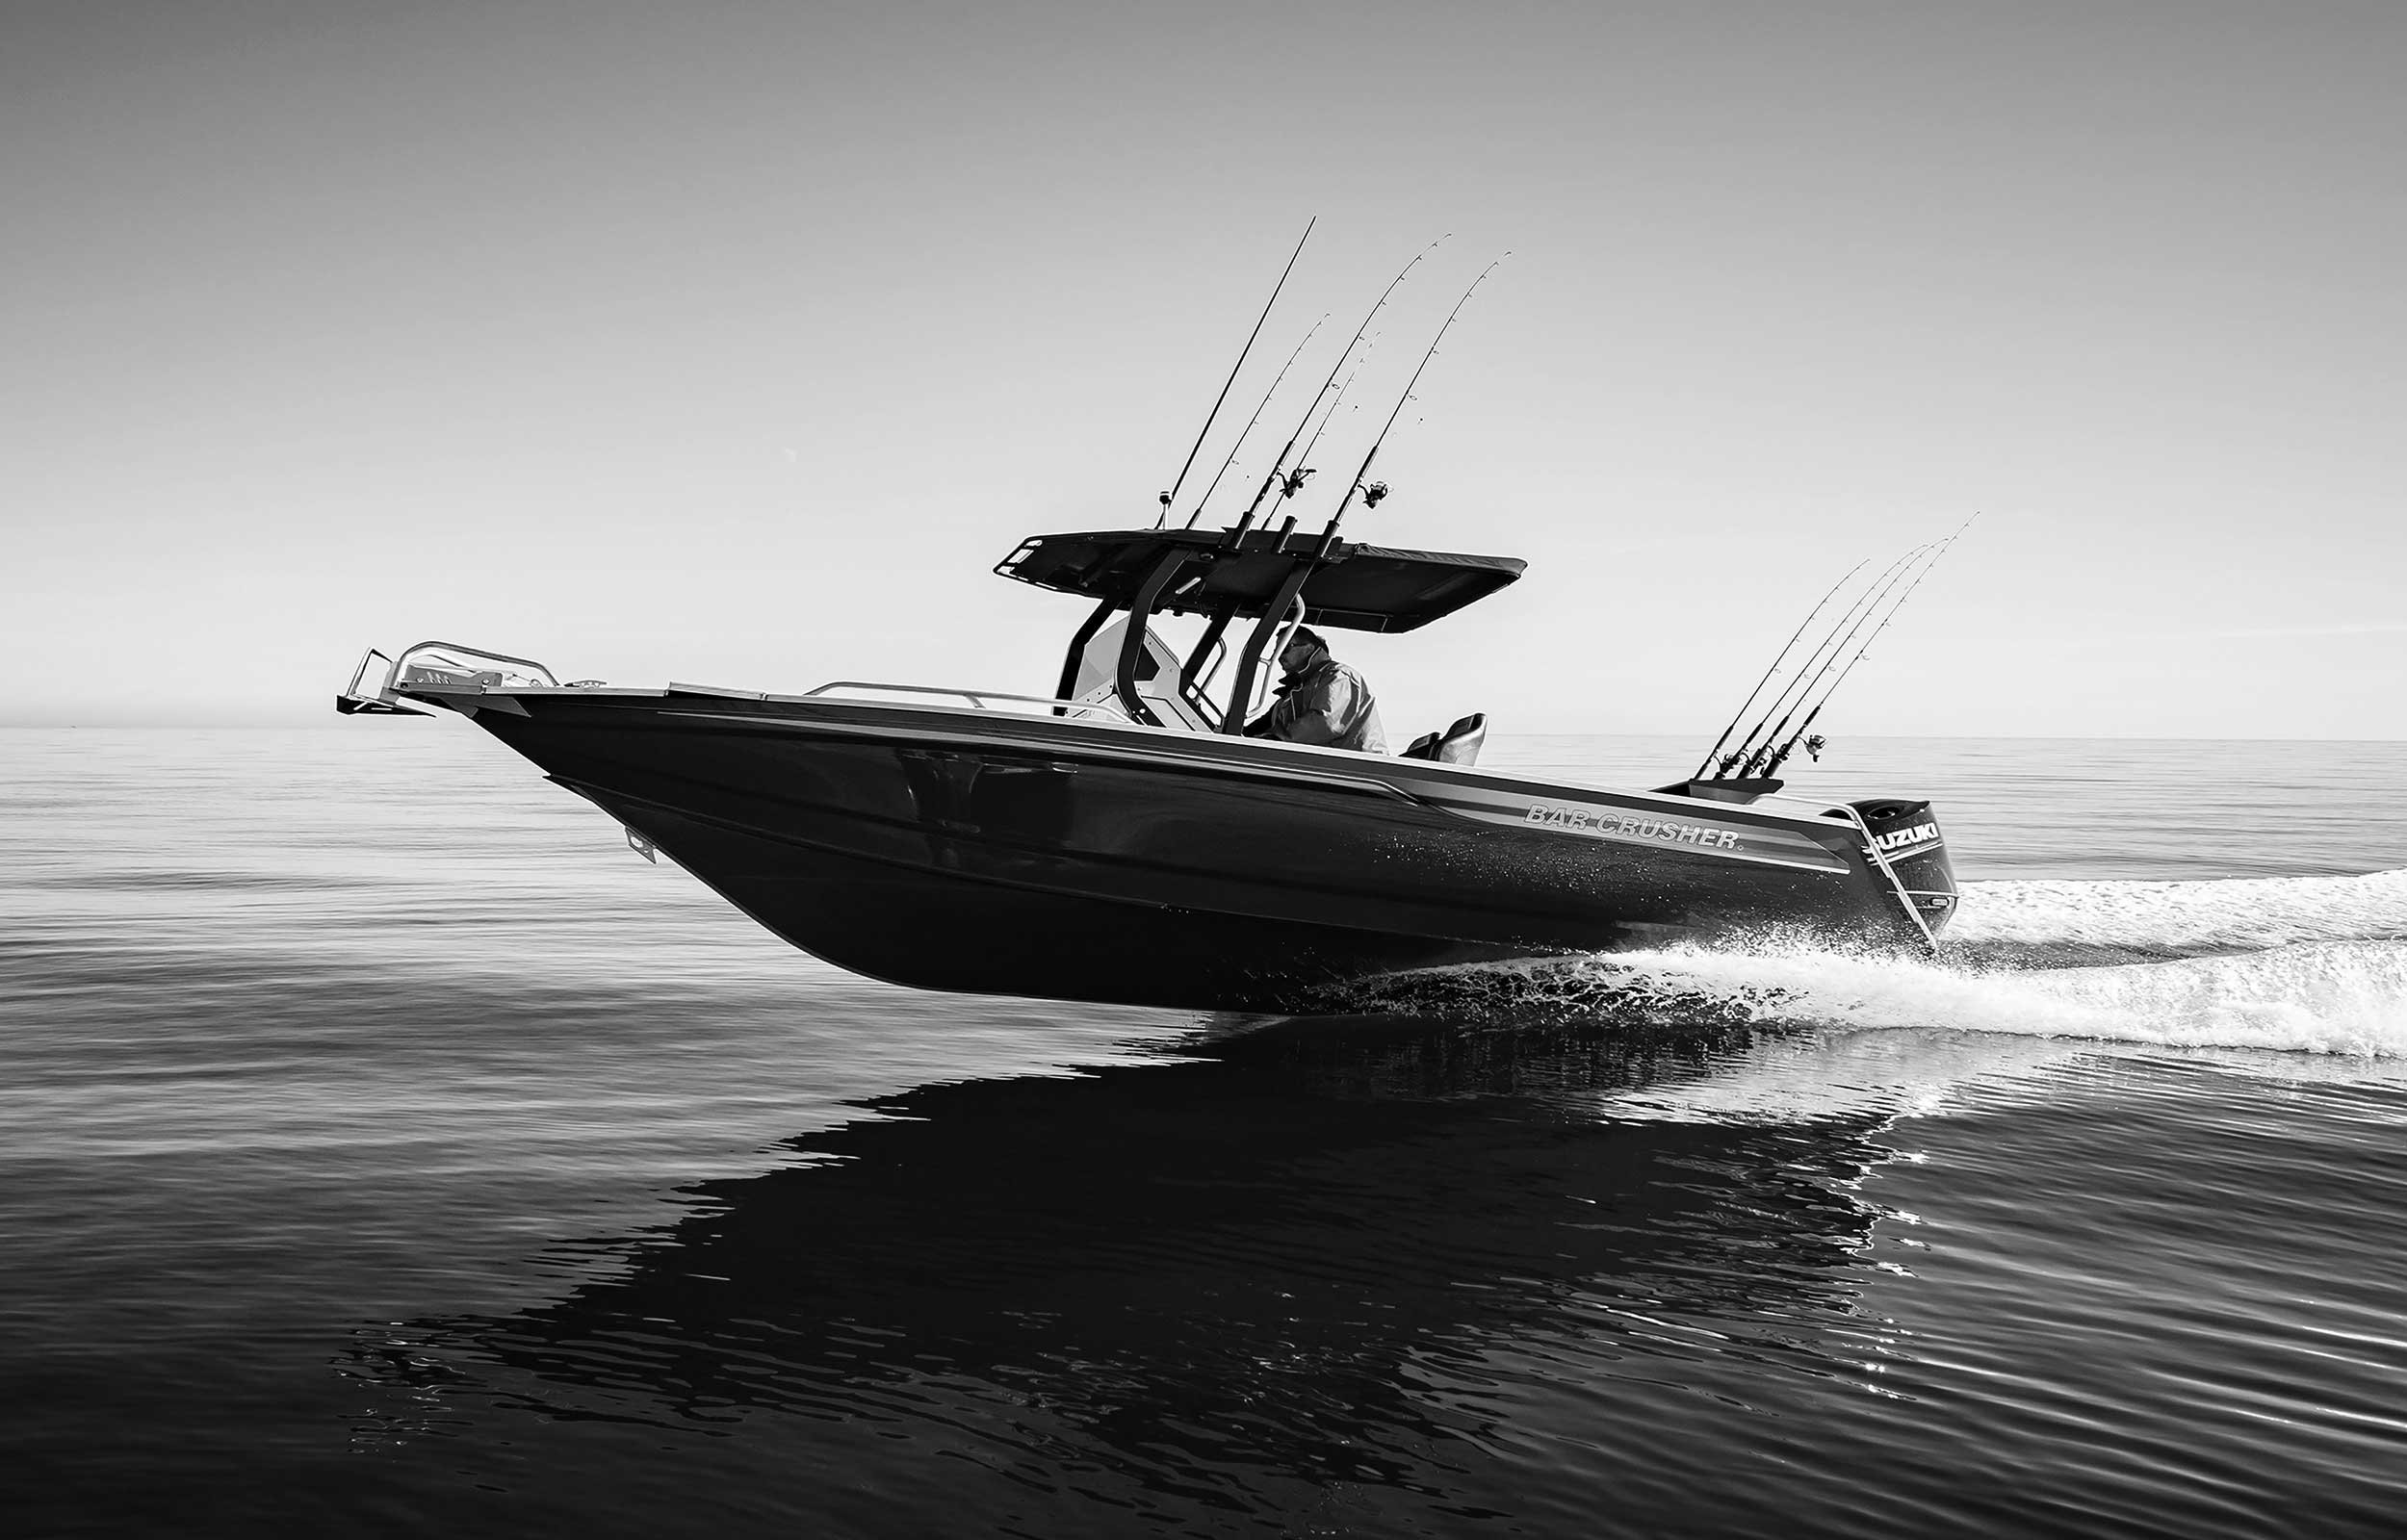 models-bar-crusher-780xt-plate-aluminium-fishing-boat-2019-web-1